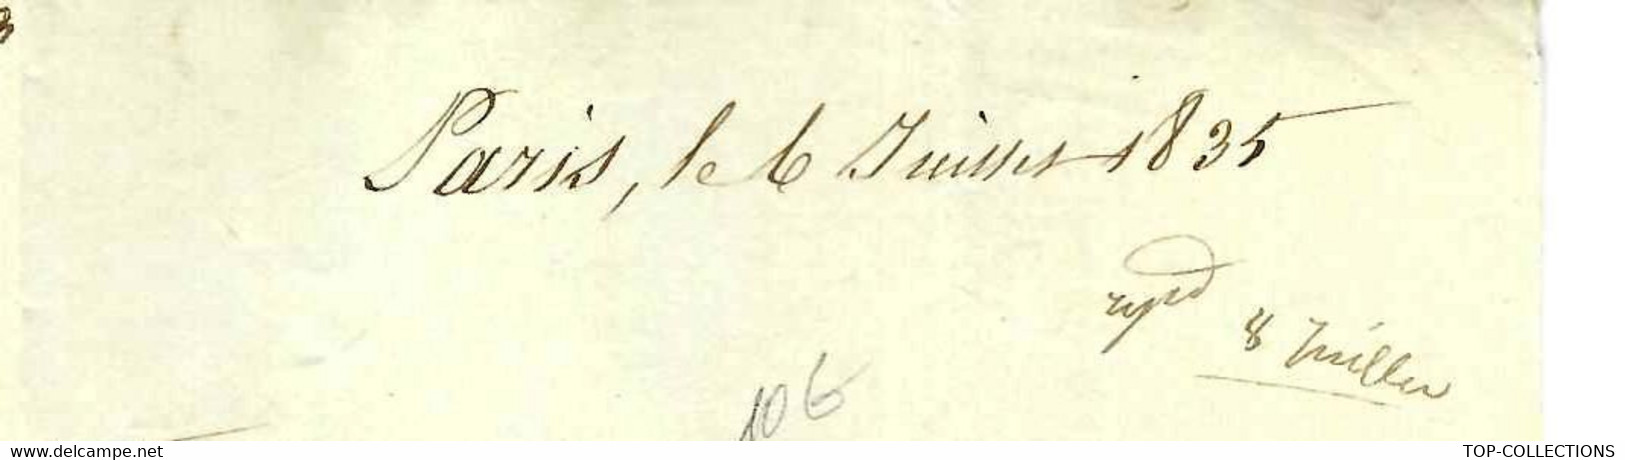 1835 De Paris Lettre Signée Marque Postale Bureau De La Maison Du Roi  COMMANDE DE TUYAUX DESSIN SUR LA LETTRE - Historische Dokumente